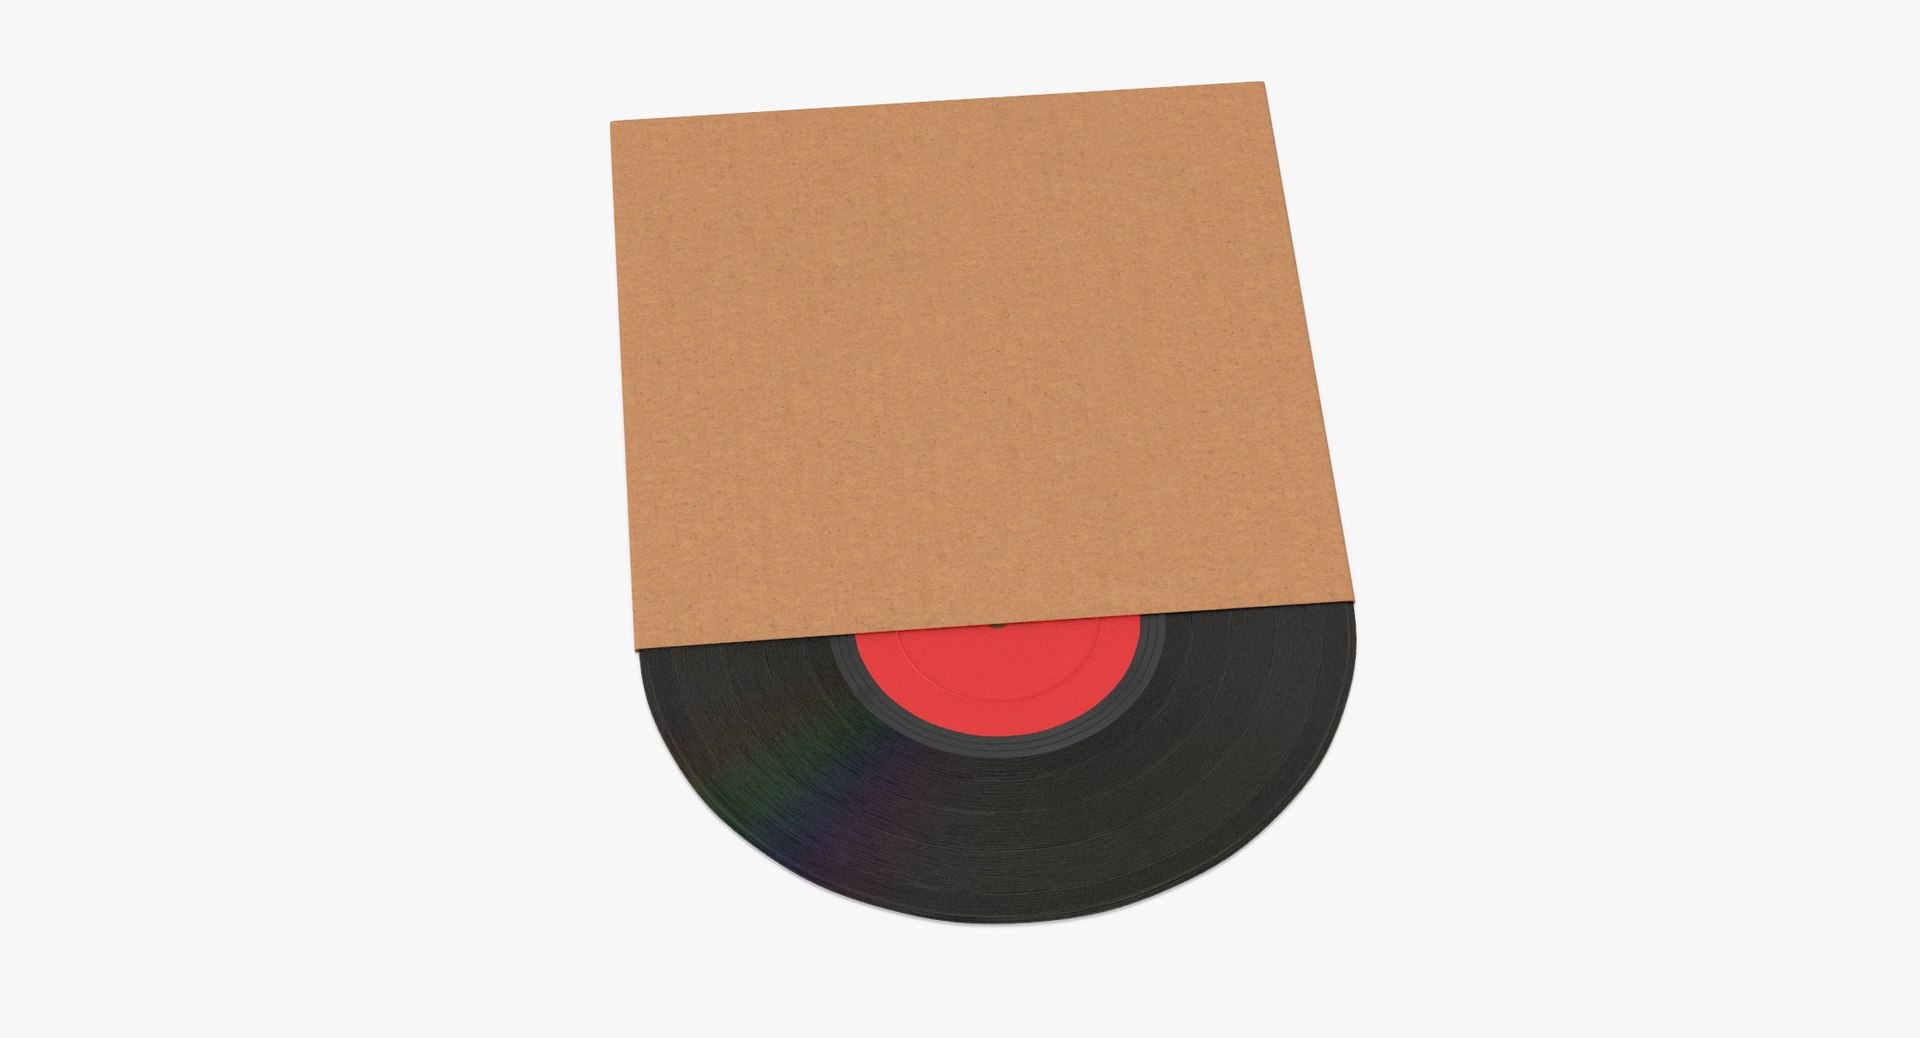 Vinyl LP 01 Cardboard Sleeve